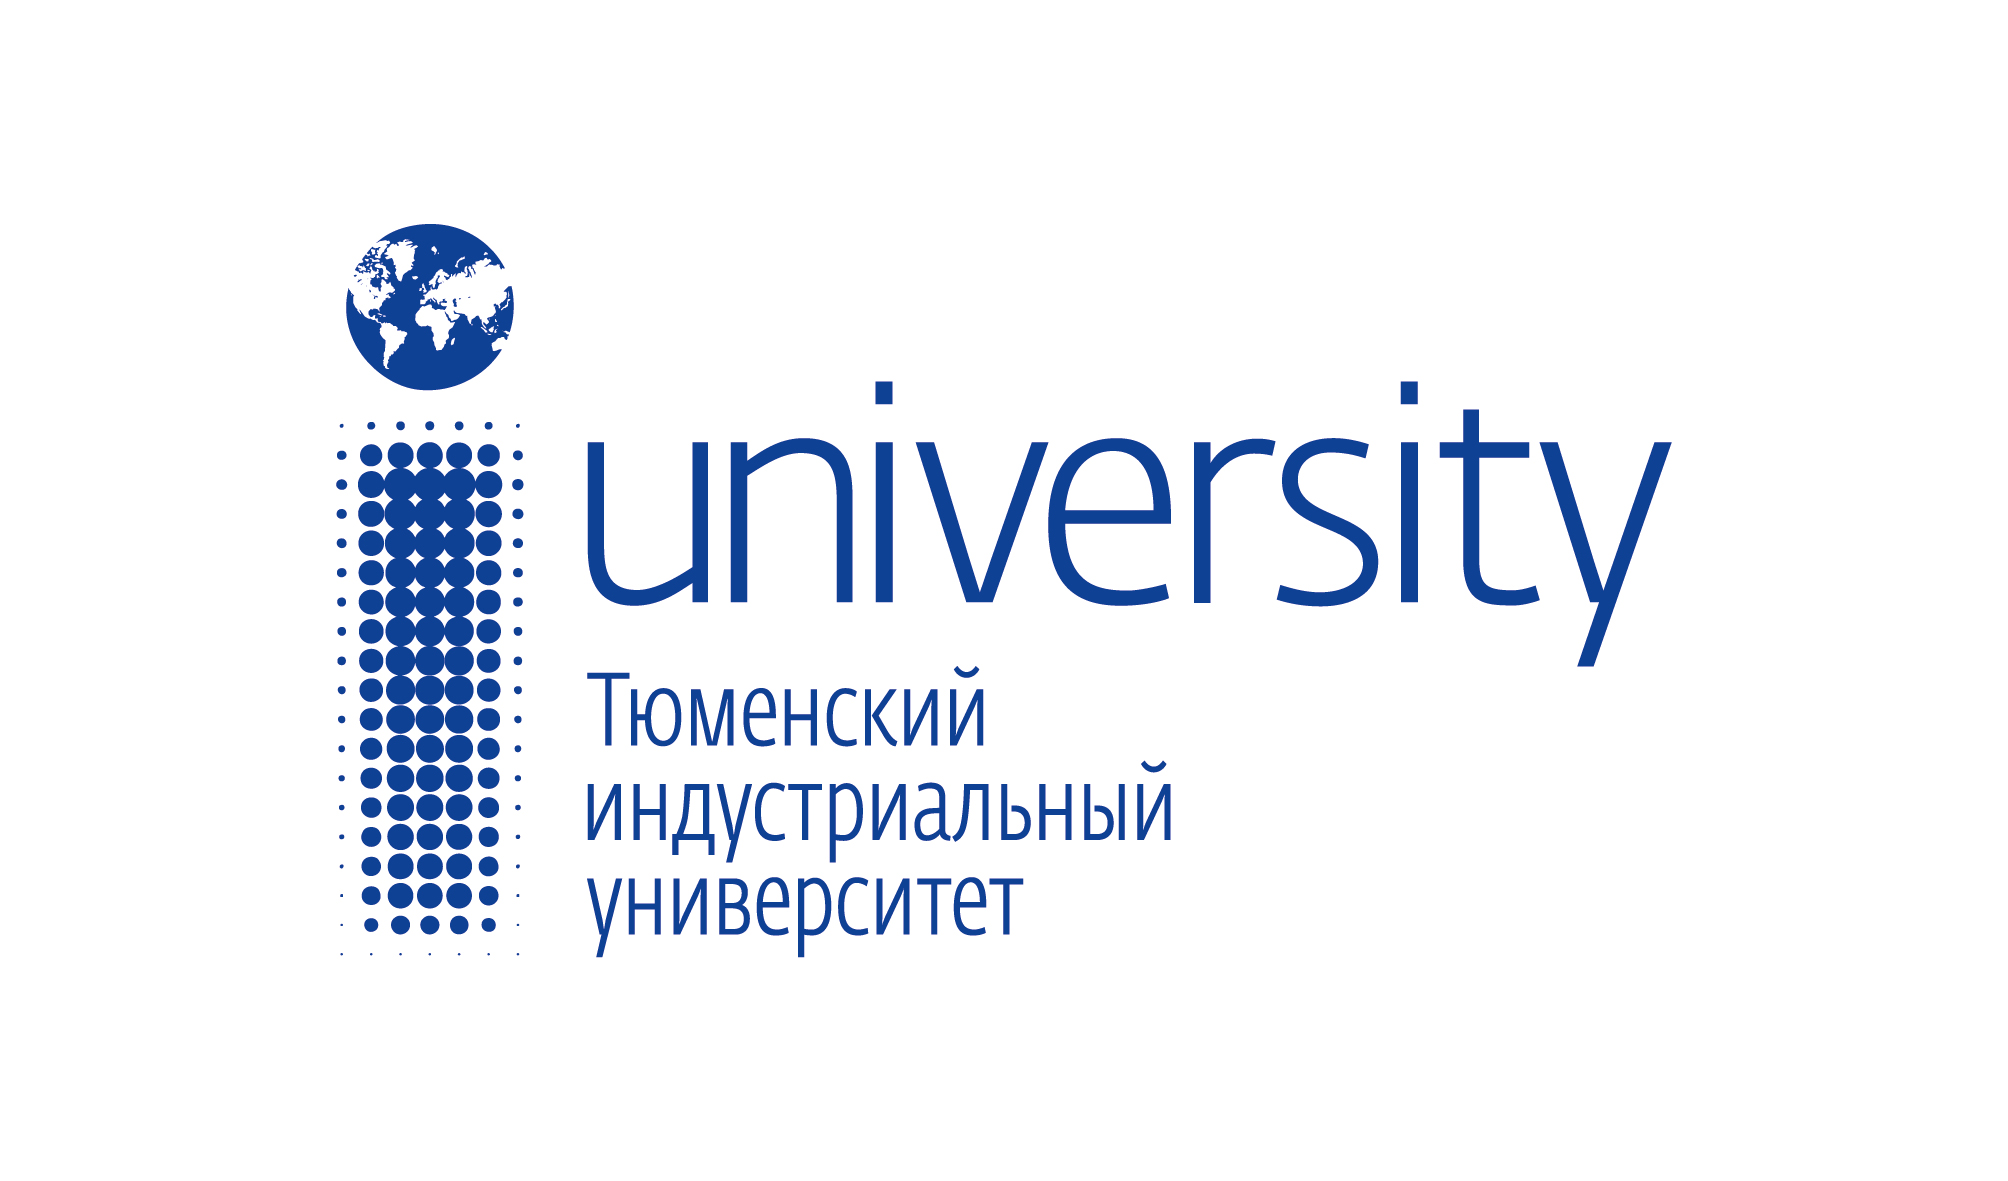 ФГБОУ "Тюменский индустриальный университет" (ТИУ)